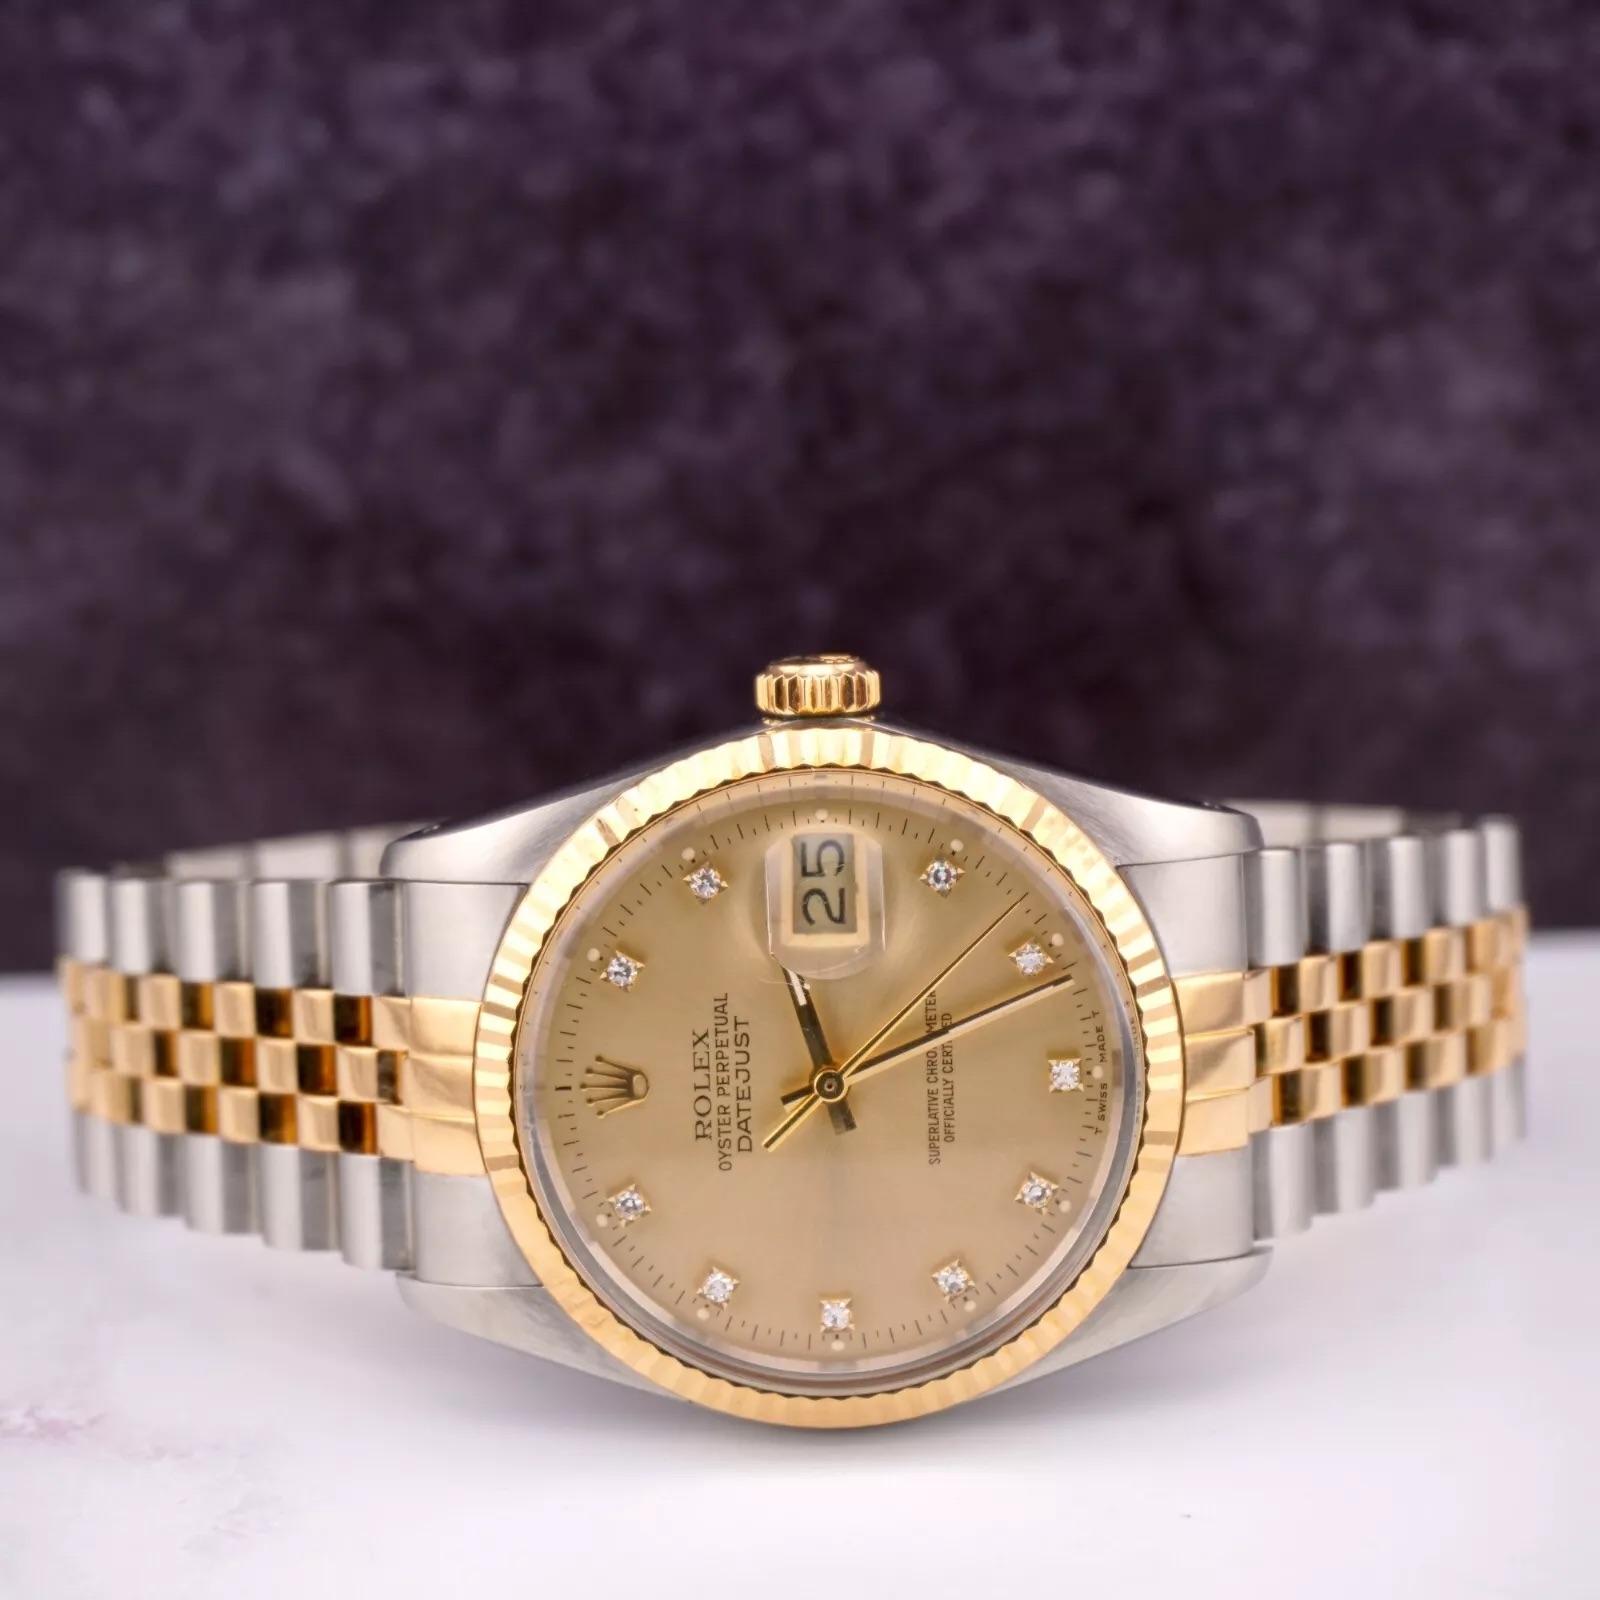 Rolex Datejust 36mm Uhr

Gebraucht mit Original Box & Karte
100% authentische Echtheitskarte
Zustand - (Großer Zustand) - Siehe Bilder
Referenz der Uhr - 16013
Modell - Datejust
Zifferblattfarbe - Gelbgold
MATERIAL - 18k Gelbgold/Edelstahl
Uhr wird